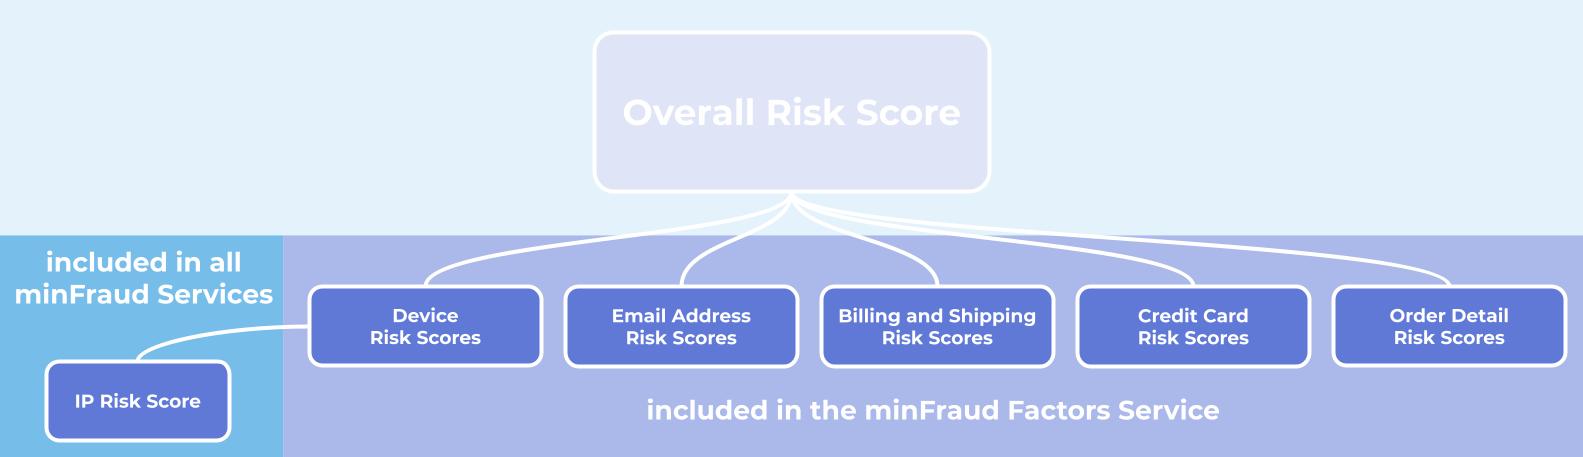 Risk_Factor_Scores.jpg